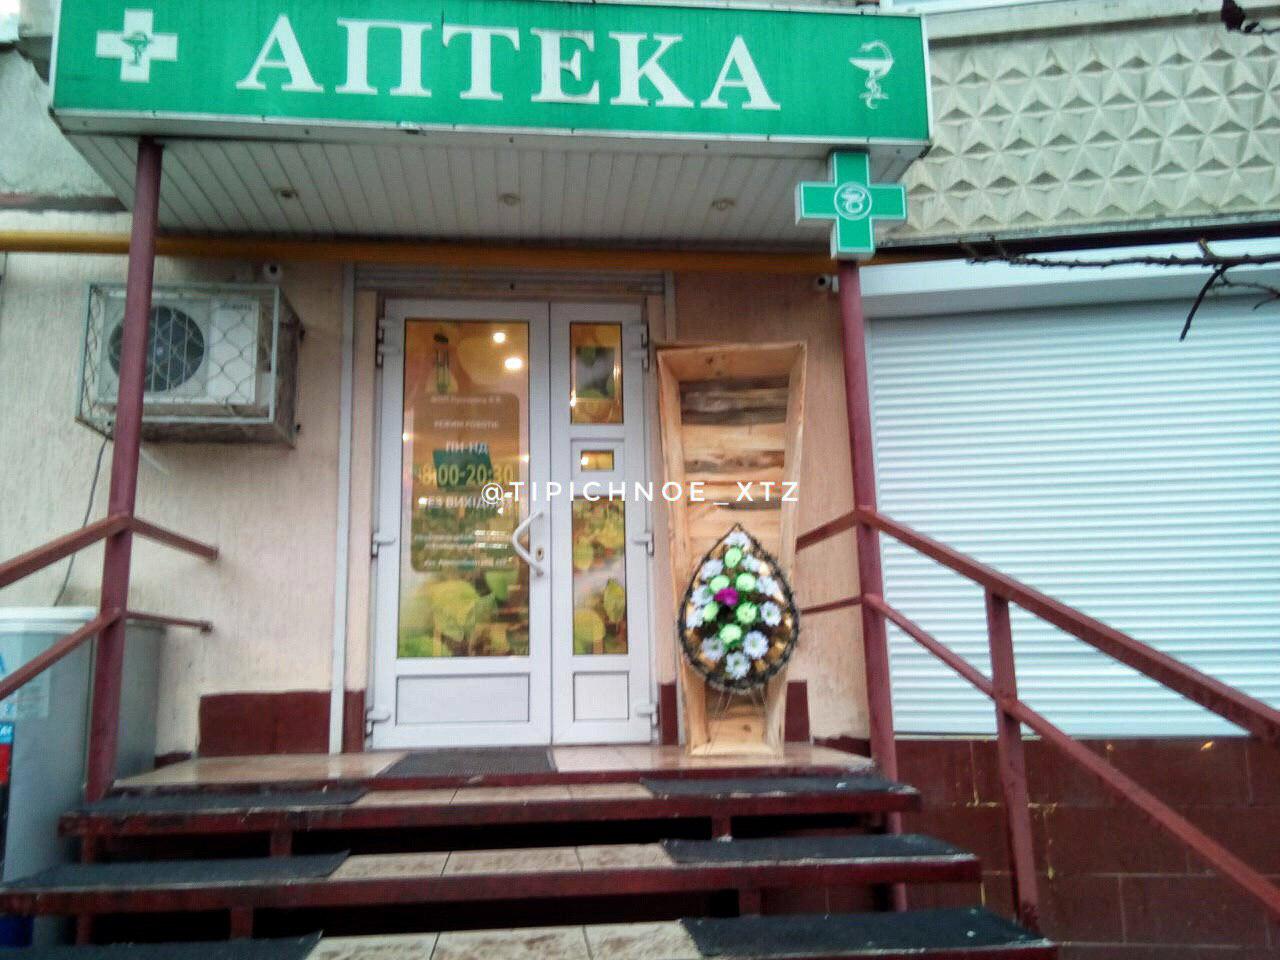 В Харькове под несколько аптек принесли гробы. Фото: "Типичное ХТЗ"